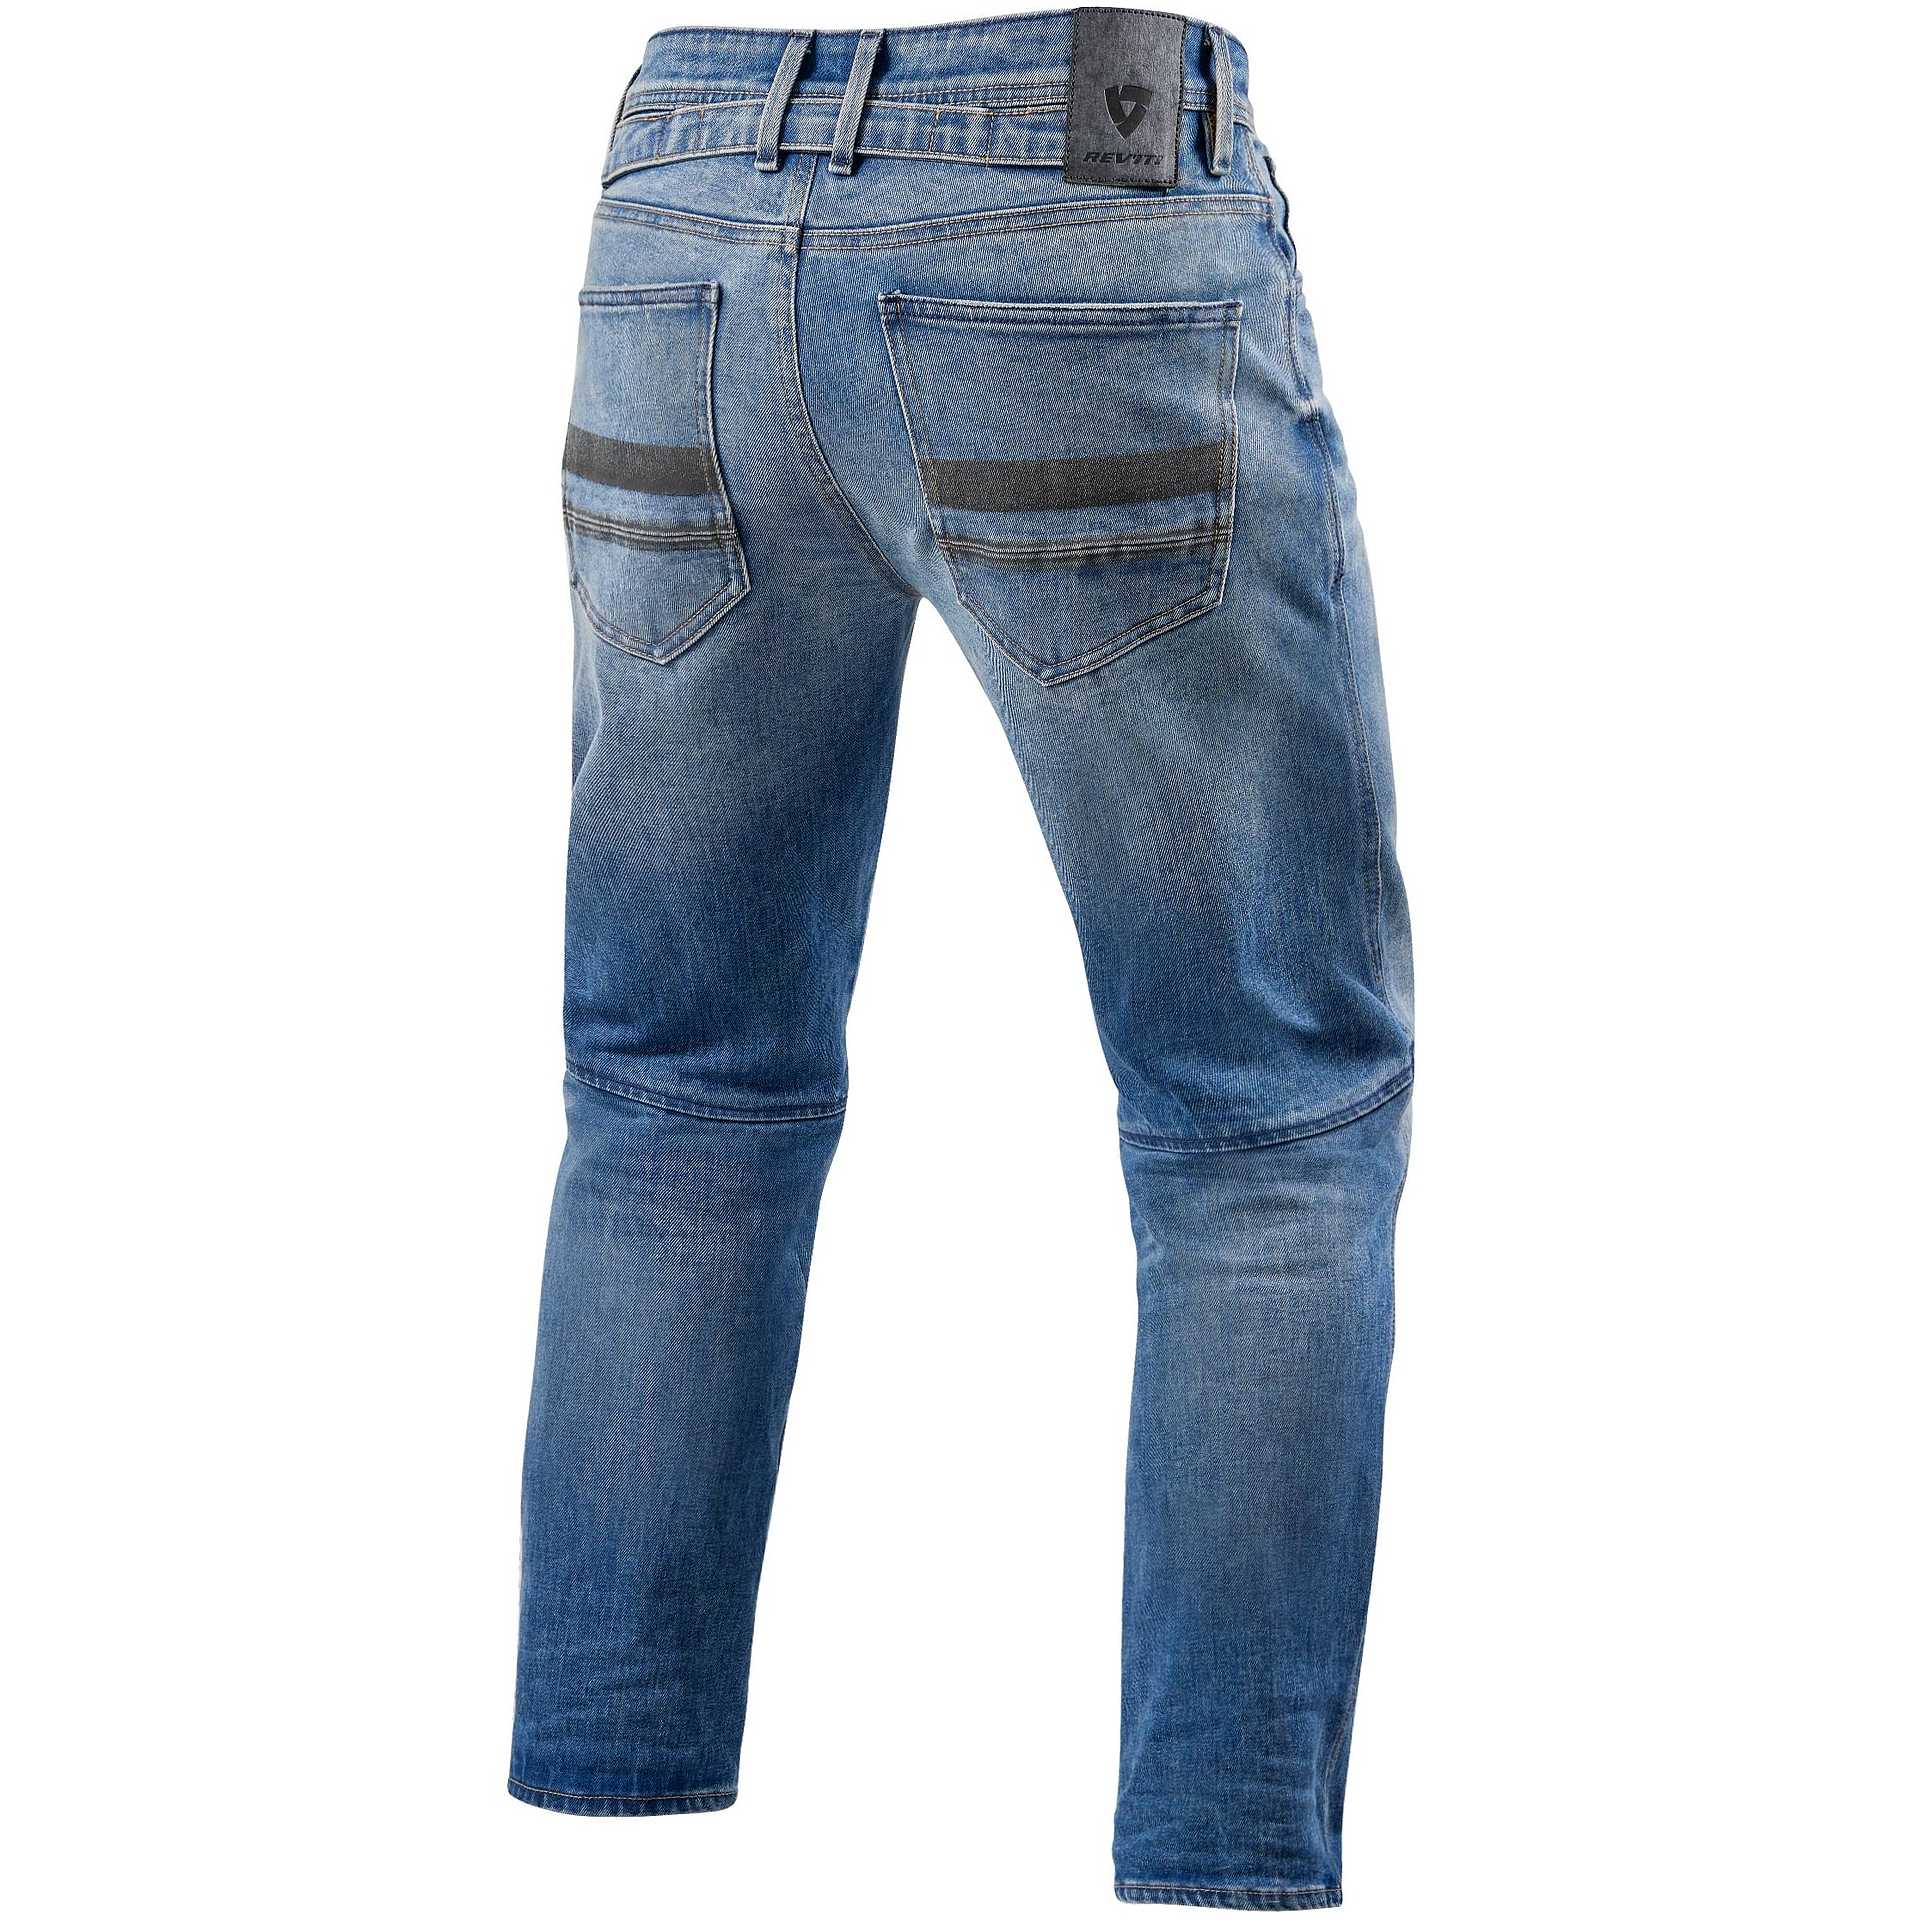 Rev'it SALT TF Jeans Medium Washed Blue L32 For Sale Online - Outletmoto.eu